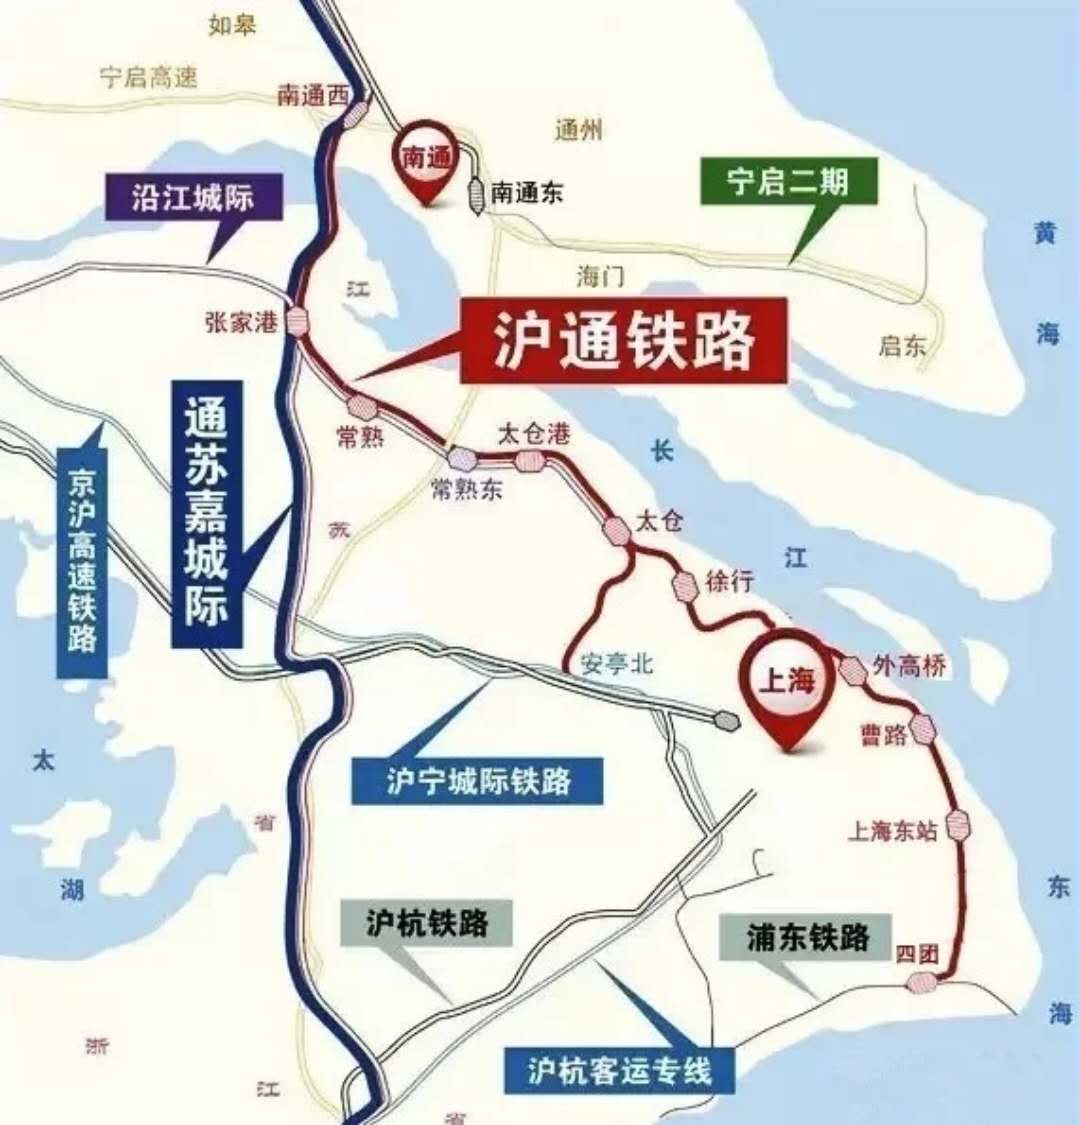 长三角城际铁路网的重点:满足上海与长三角城市群边缘交通需求